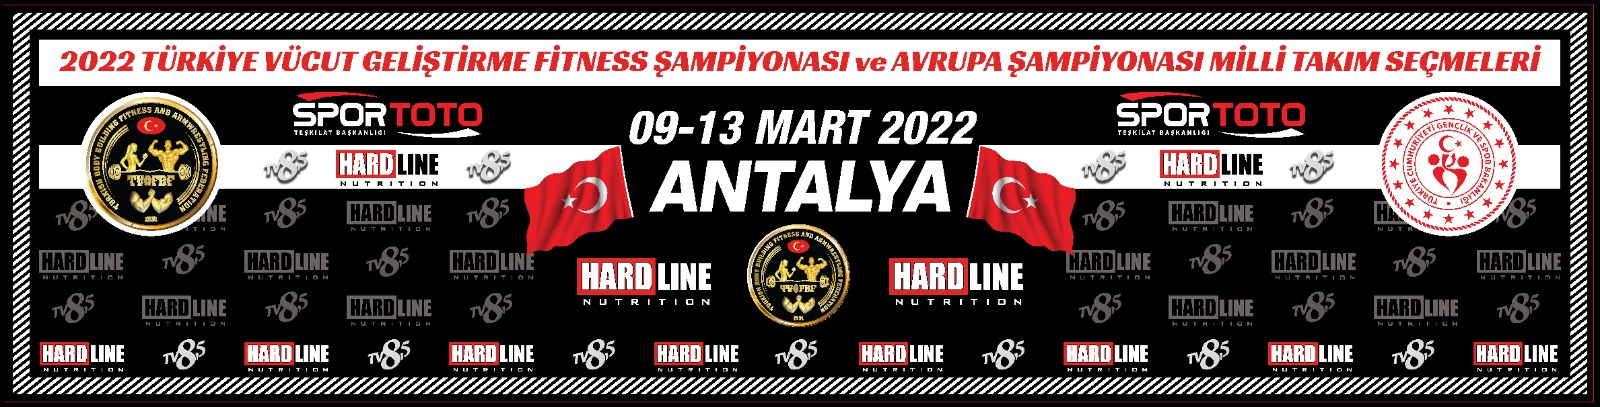 Ana sponsoru olduğumuz Vücut Geliştirme ve Fitness Türkiye Şampiyona’sı  09-13 Mart 2022  tarihleri arasında Antalya Kemer ‘de yapıldı. 